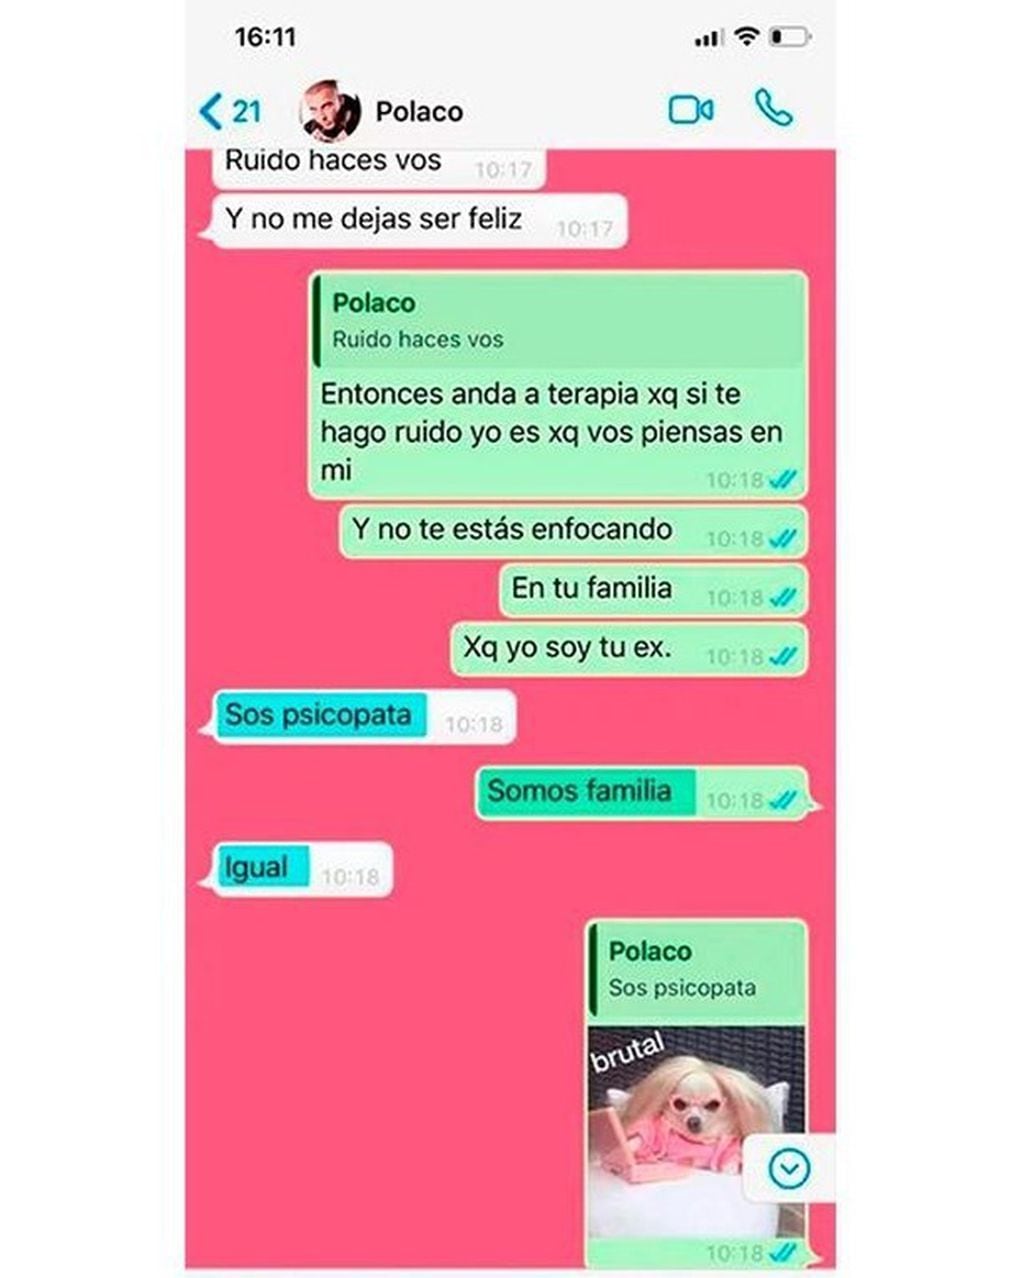 Se filtró un intenso cruce de palabras por Whatsapp entre El Polaco y Varia Aquino